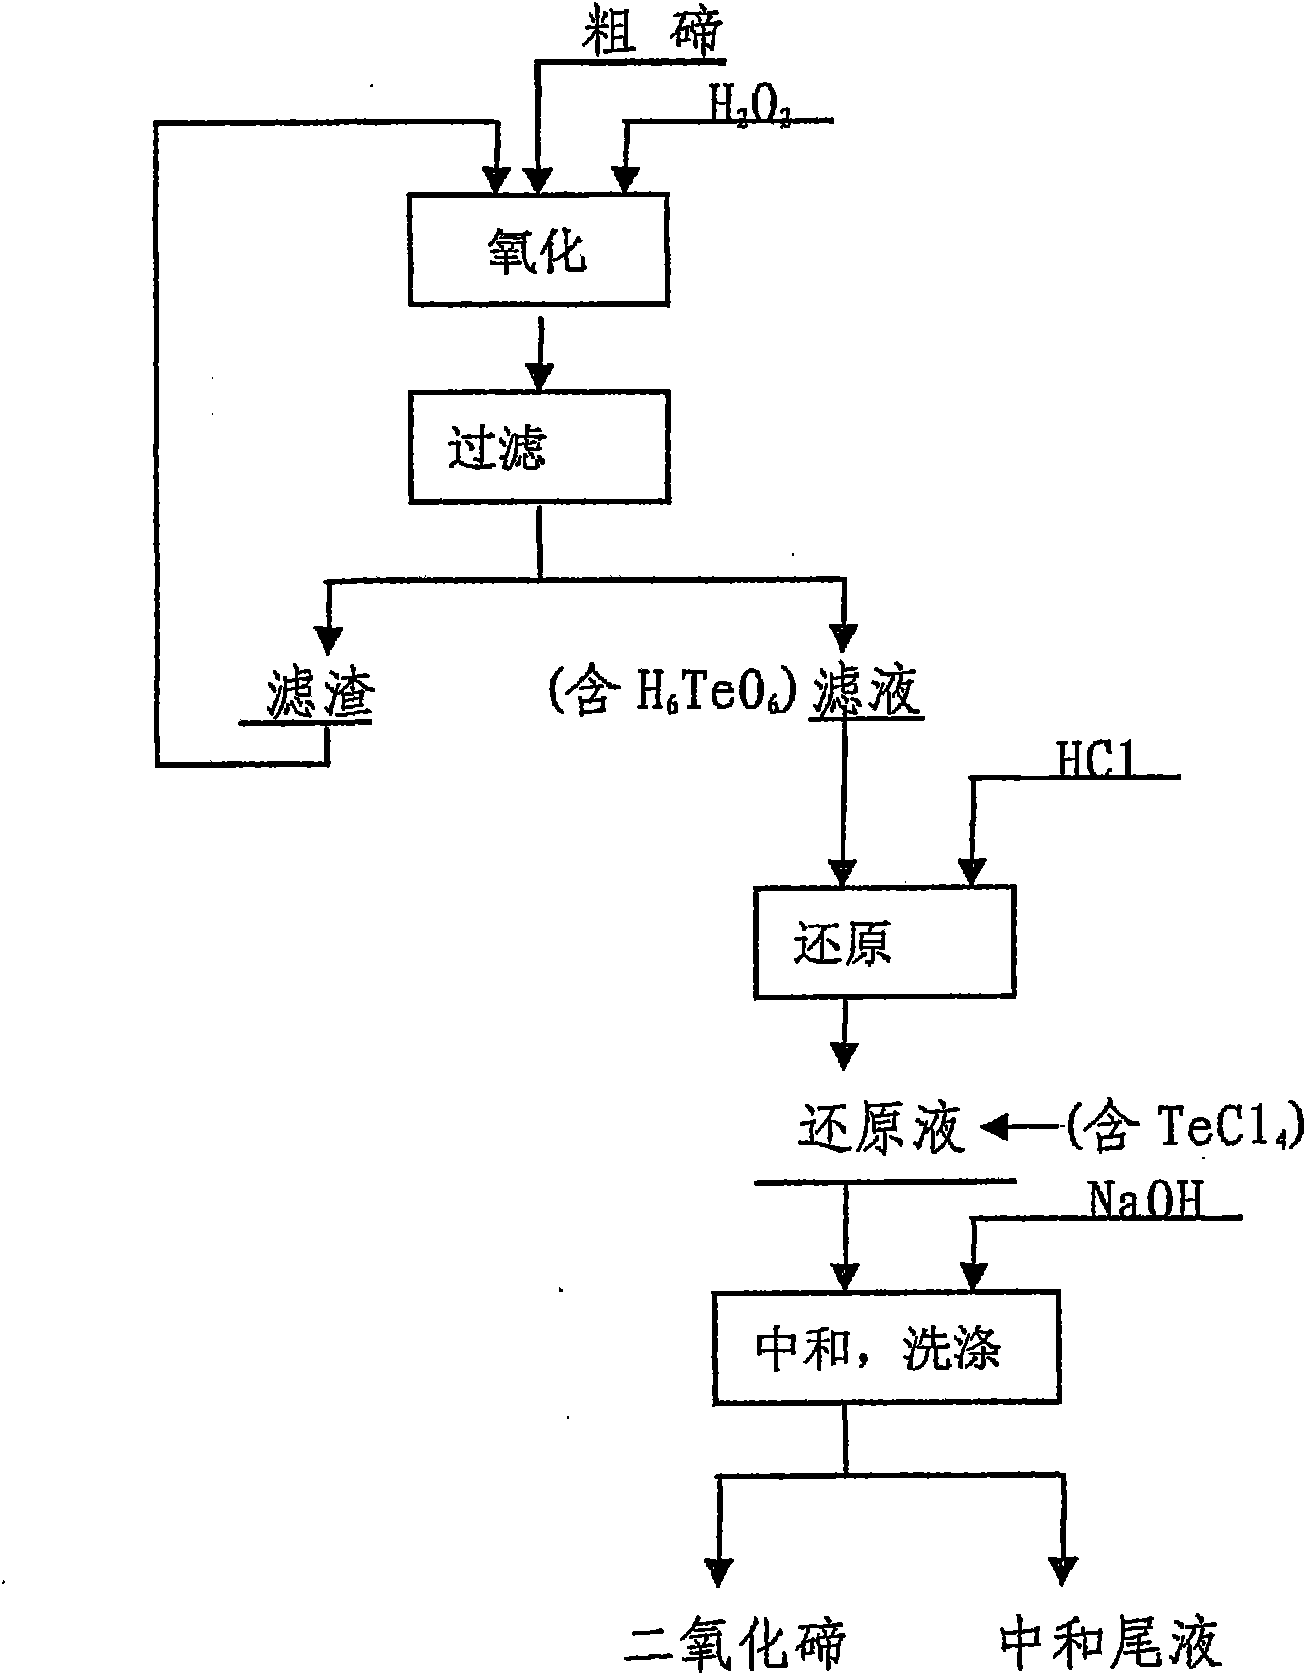 Method for preparing tellurium dioxide by using crude tellurium as raw material